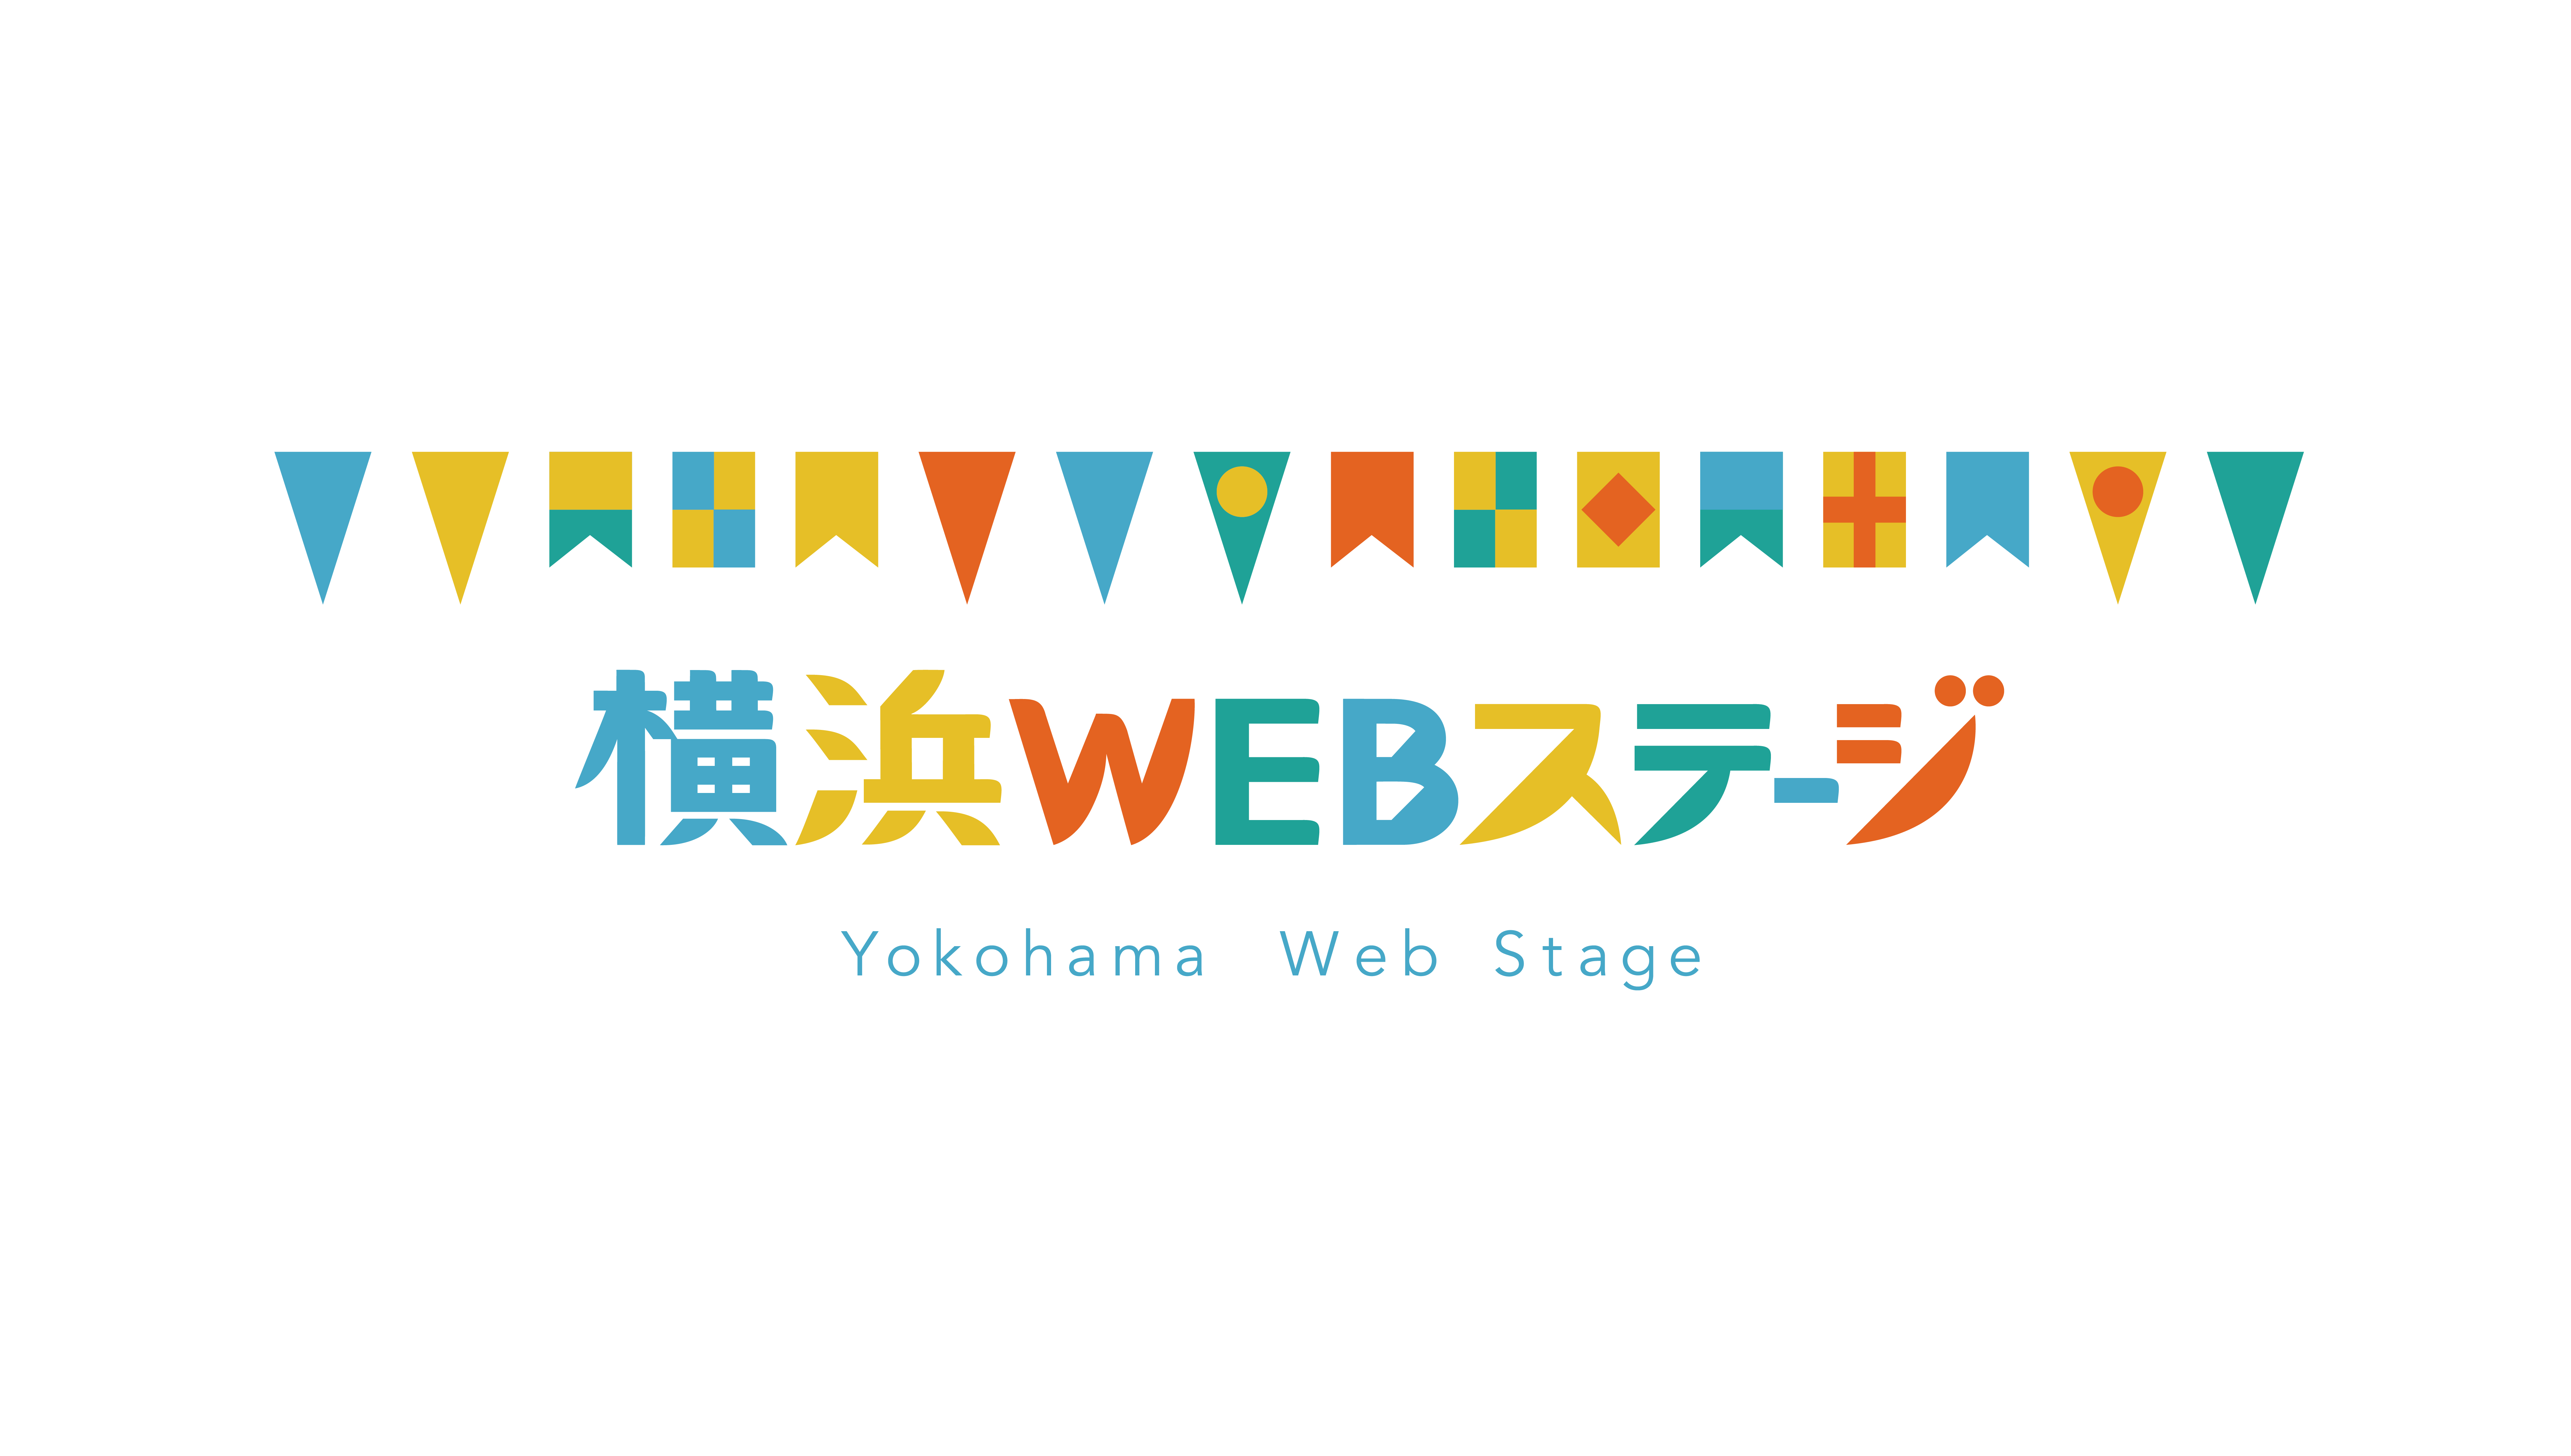 バーチャル版芸術フェス 横浜webステージ 始まる ららら クラブ